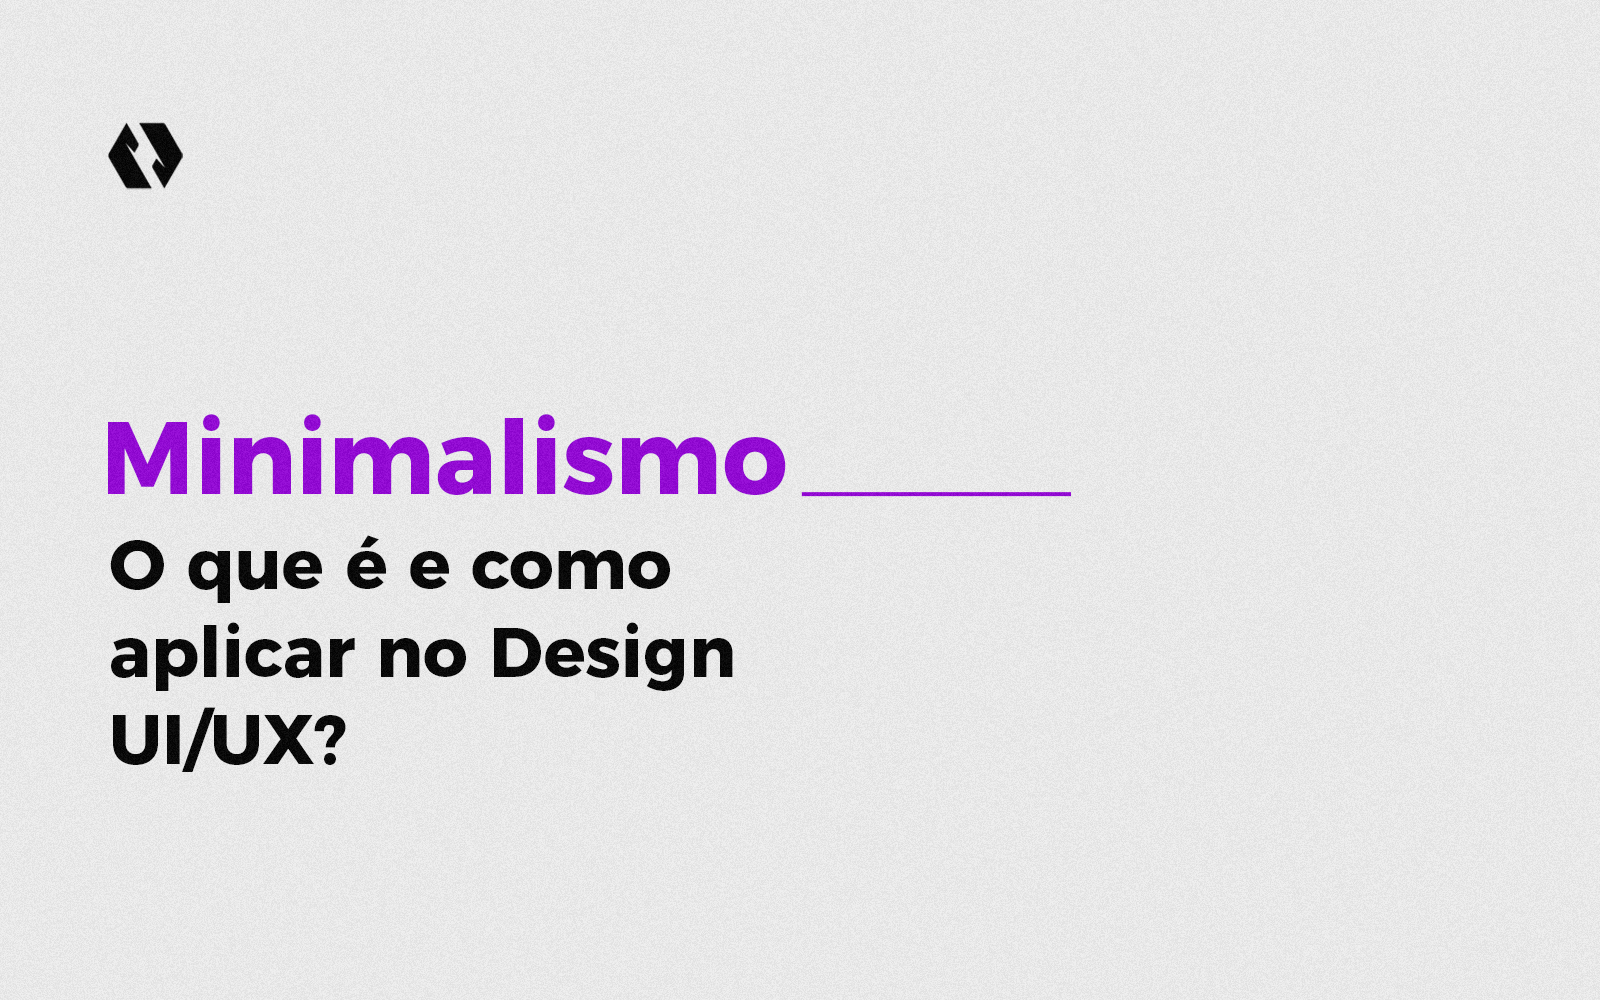 Minimalismo: O que é e como aplicar no Design UI/UX?